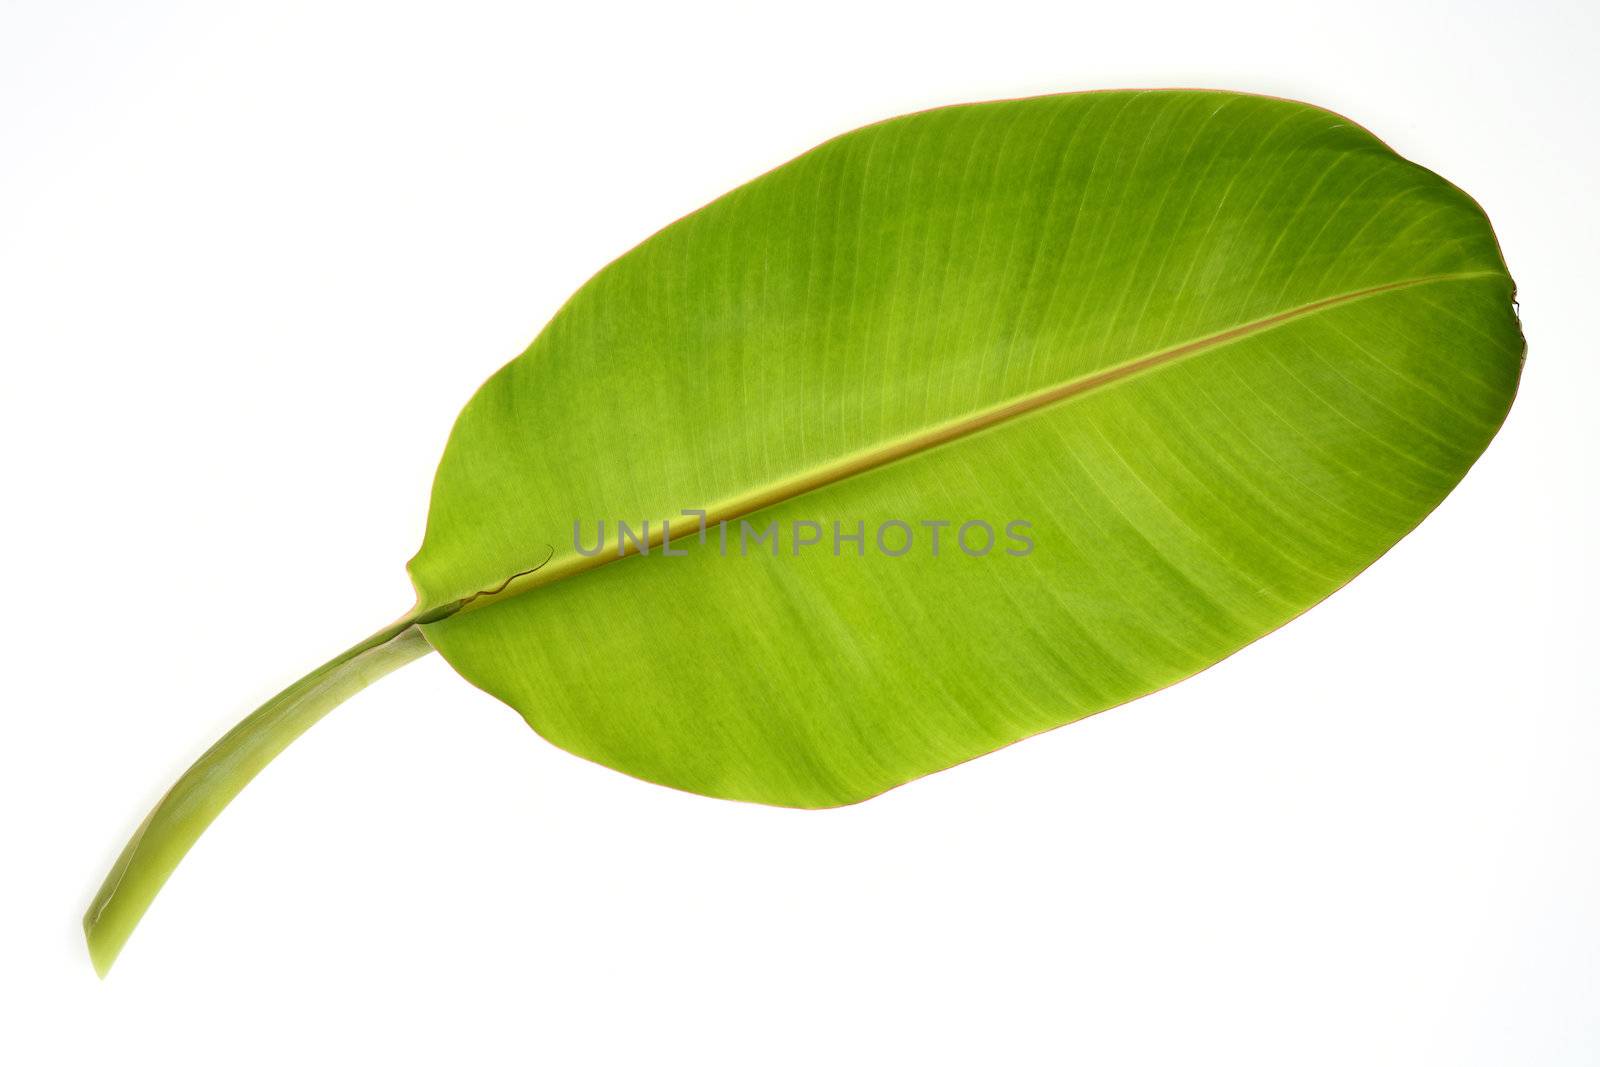 Banana leaf isolated on white